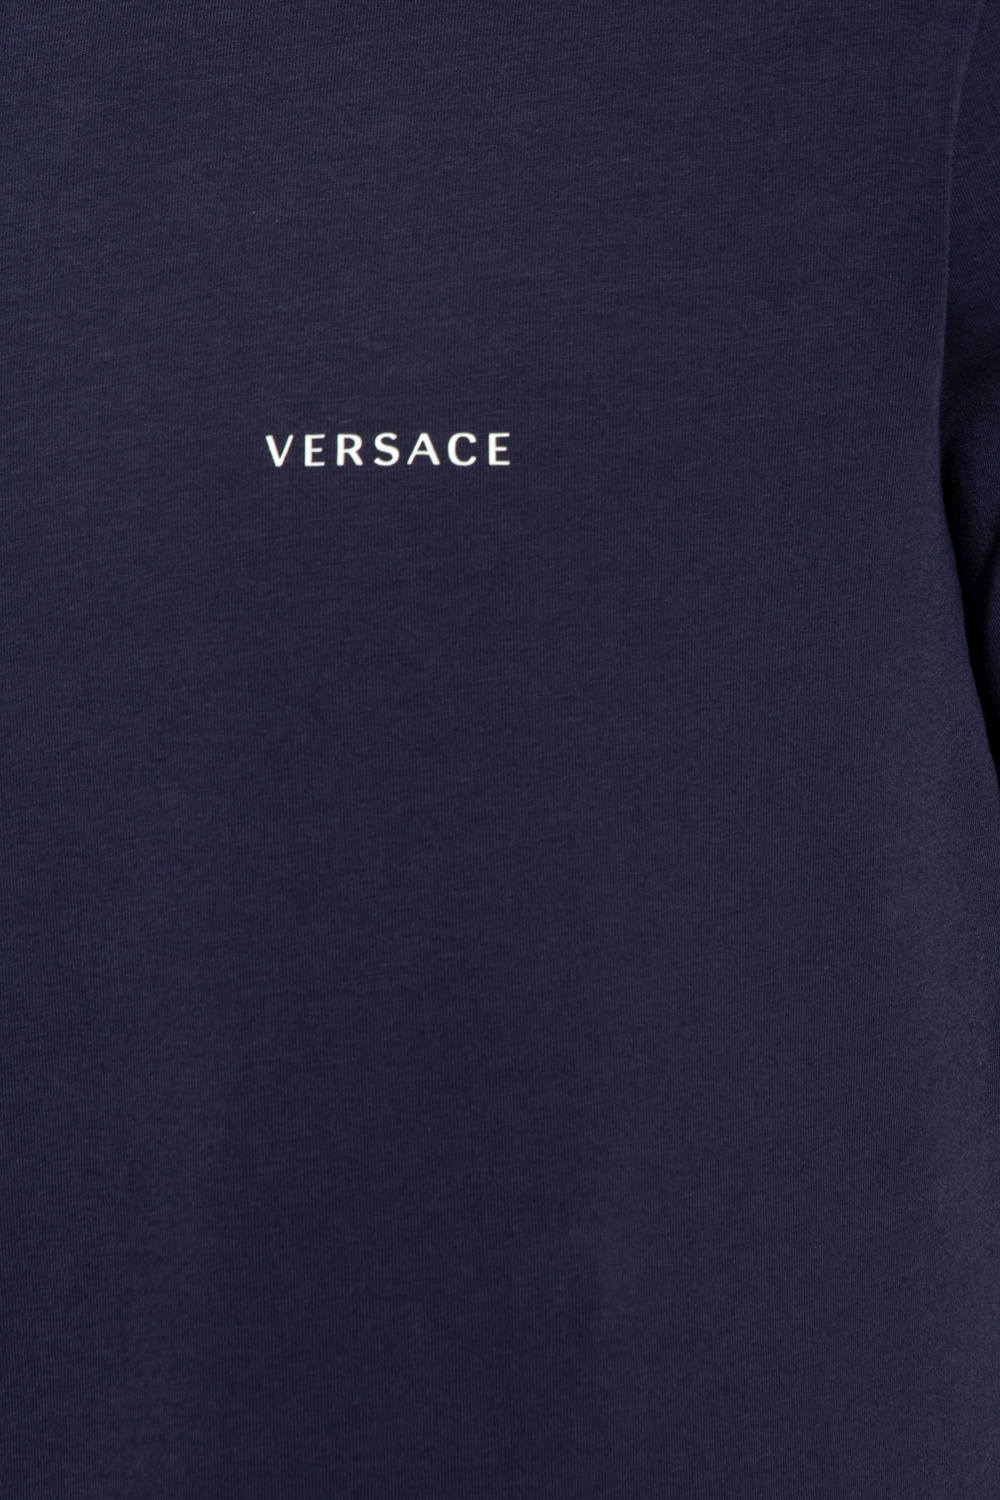 Versace comme des garcons homme plus t shirt mit grafischem print item